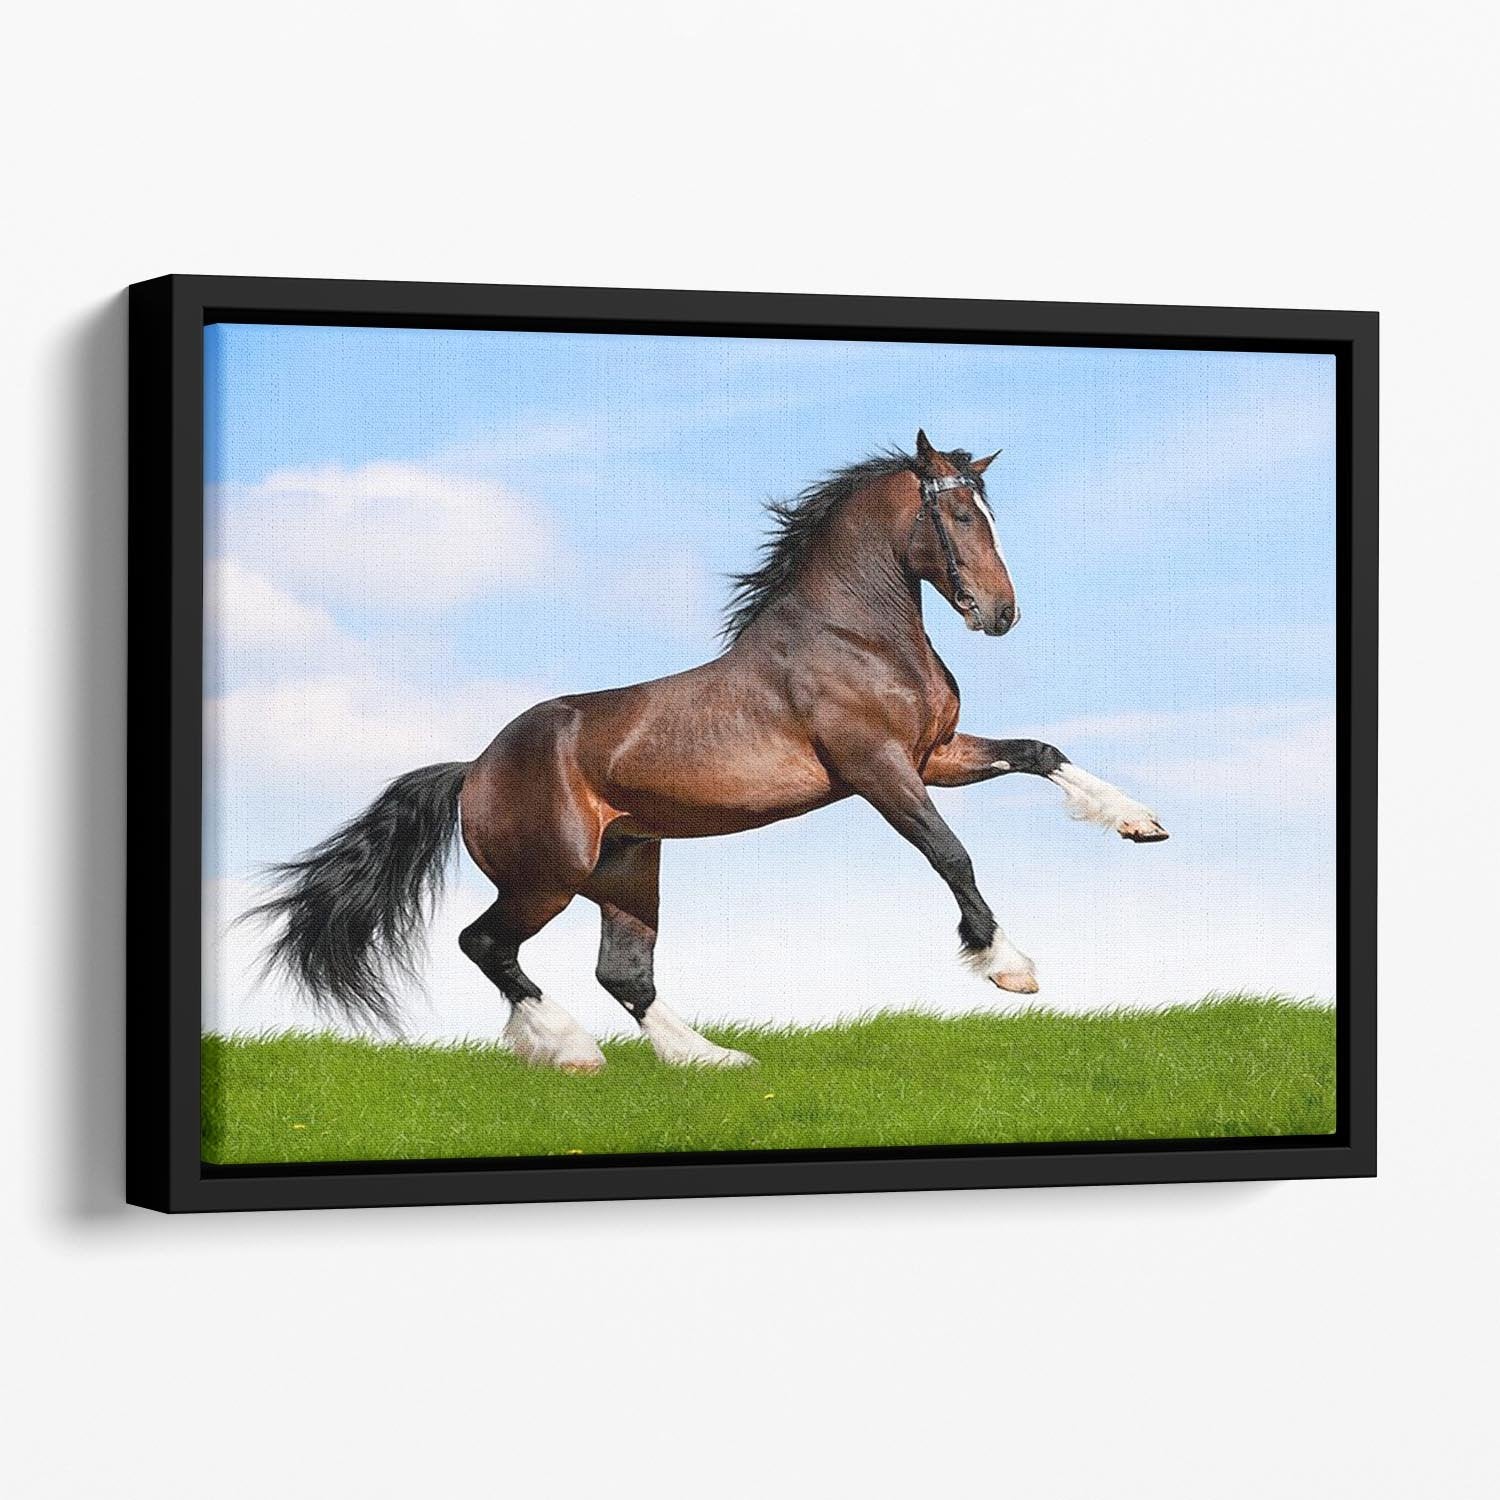 Bay horse running in field Floating Framed Canvas - Canvas Art Rocks - 1